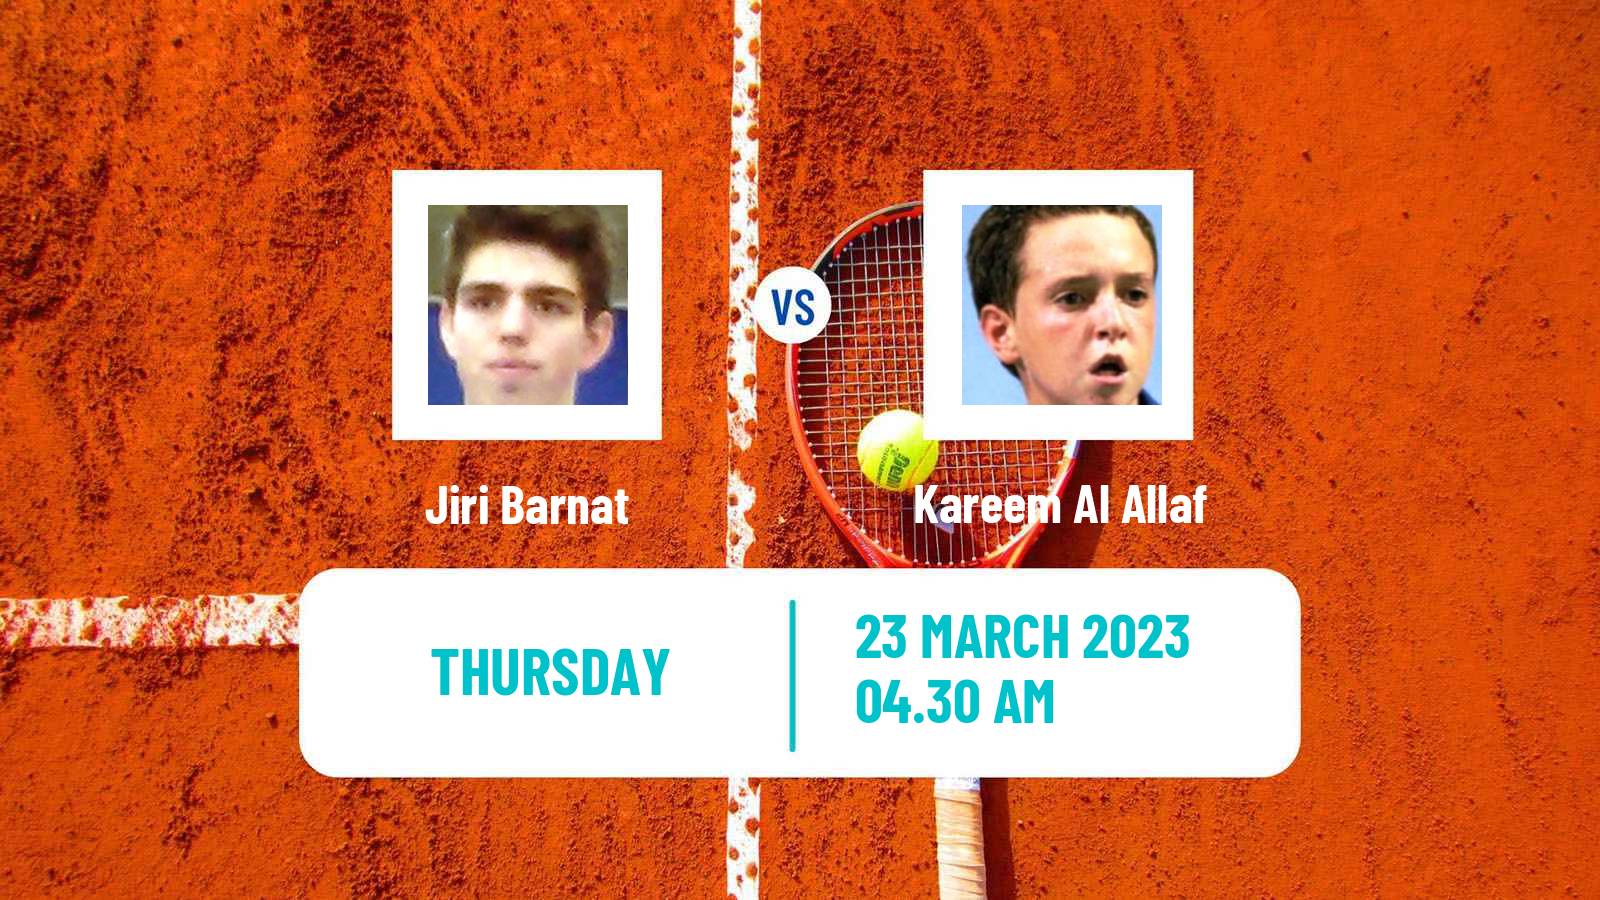 Tennis ITF Tournaments Jiri Barnat - Kareem Al Allaf